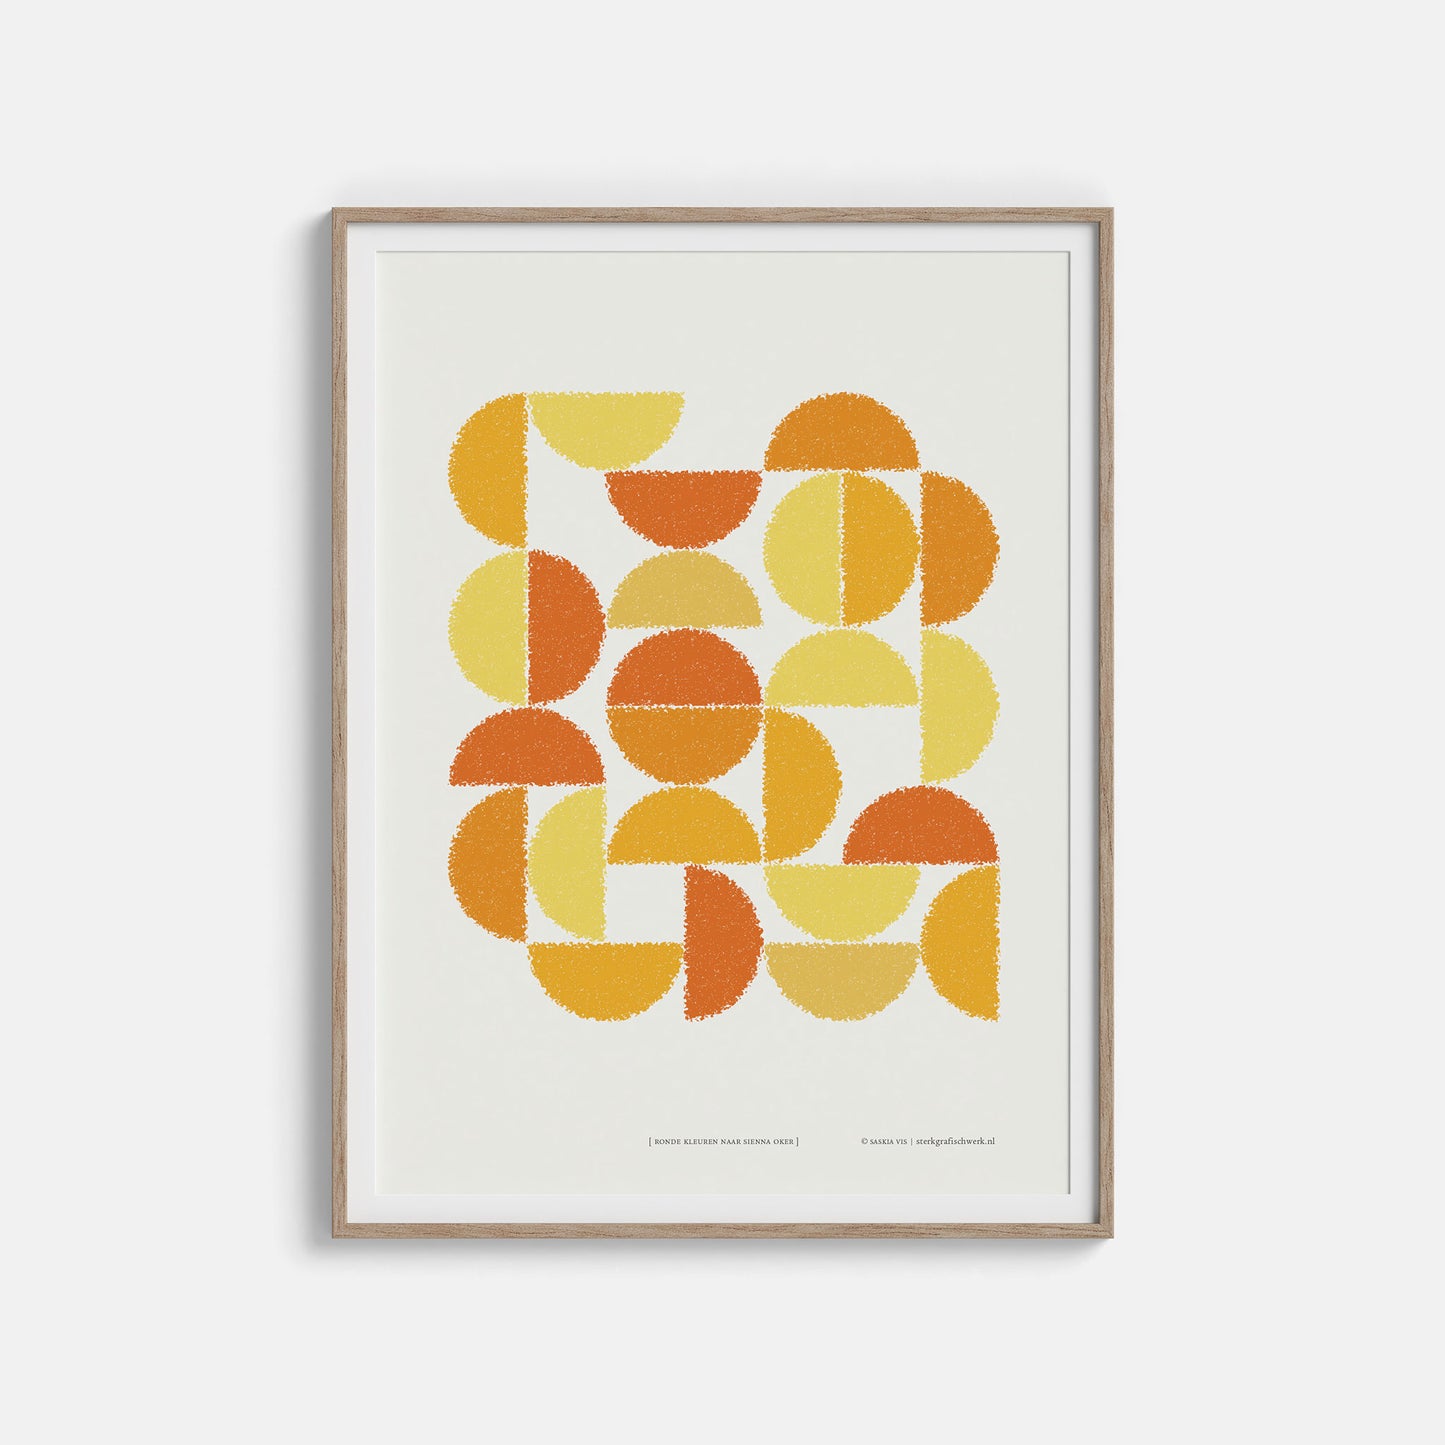 Productafbeelding poster "ronde kleuren naar sienna oker" in een houten lijst hangend aan een creme gekleurde wand